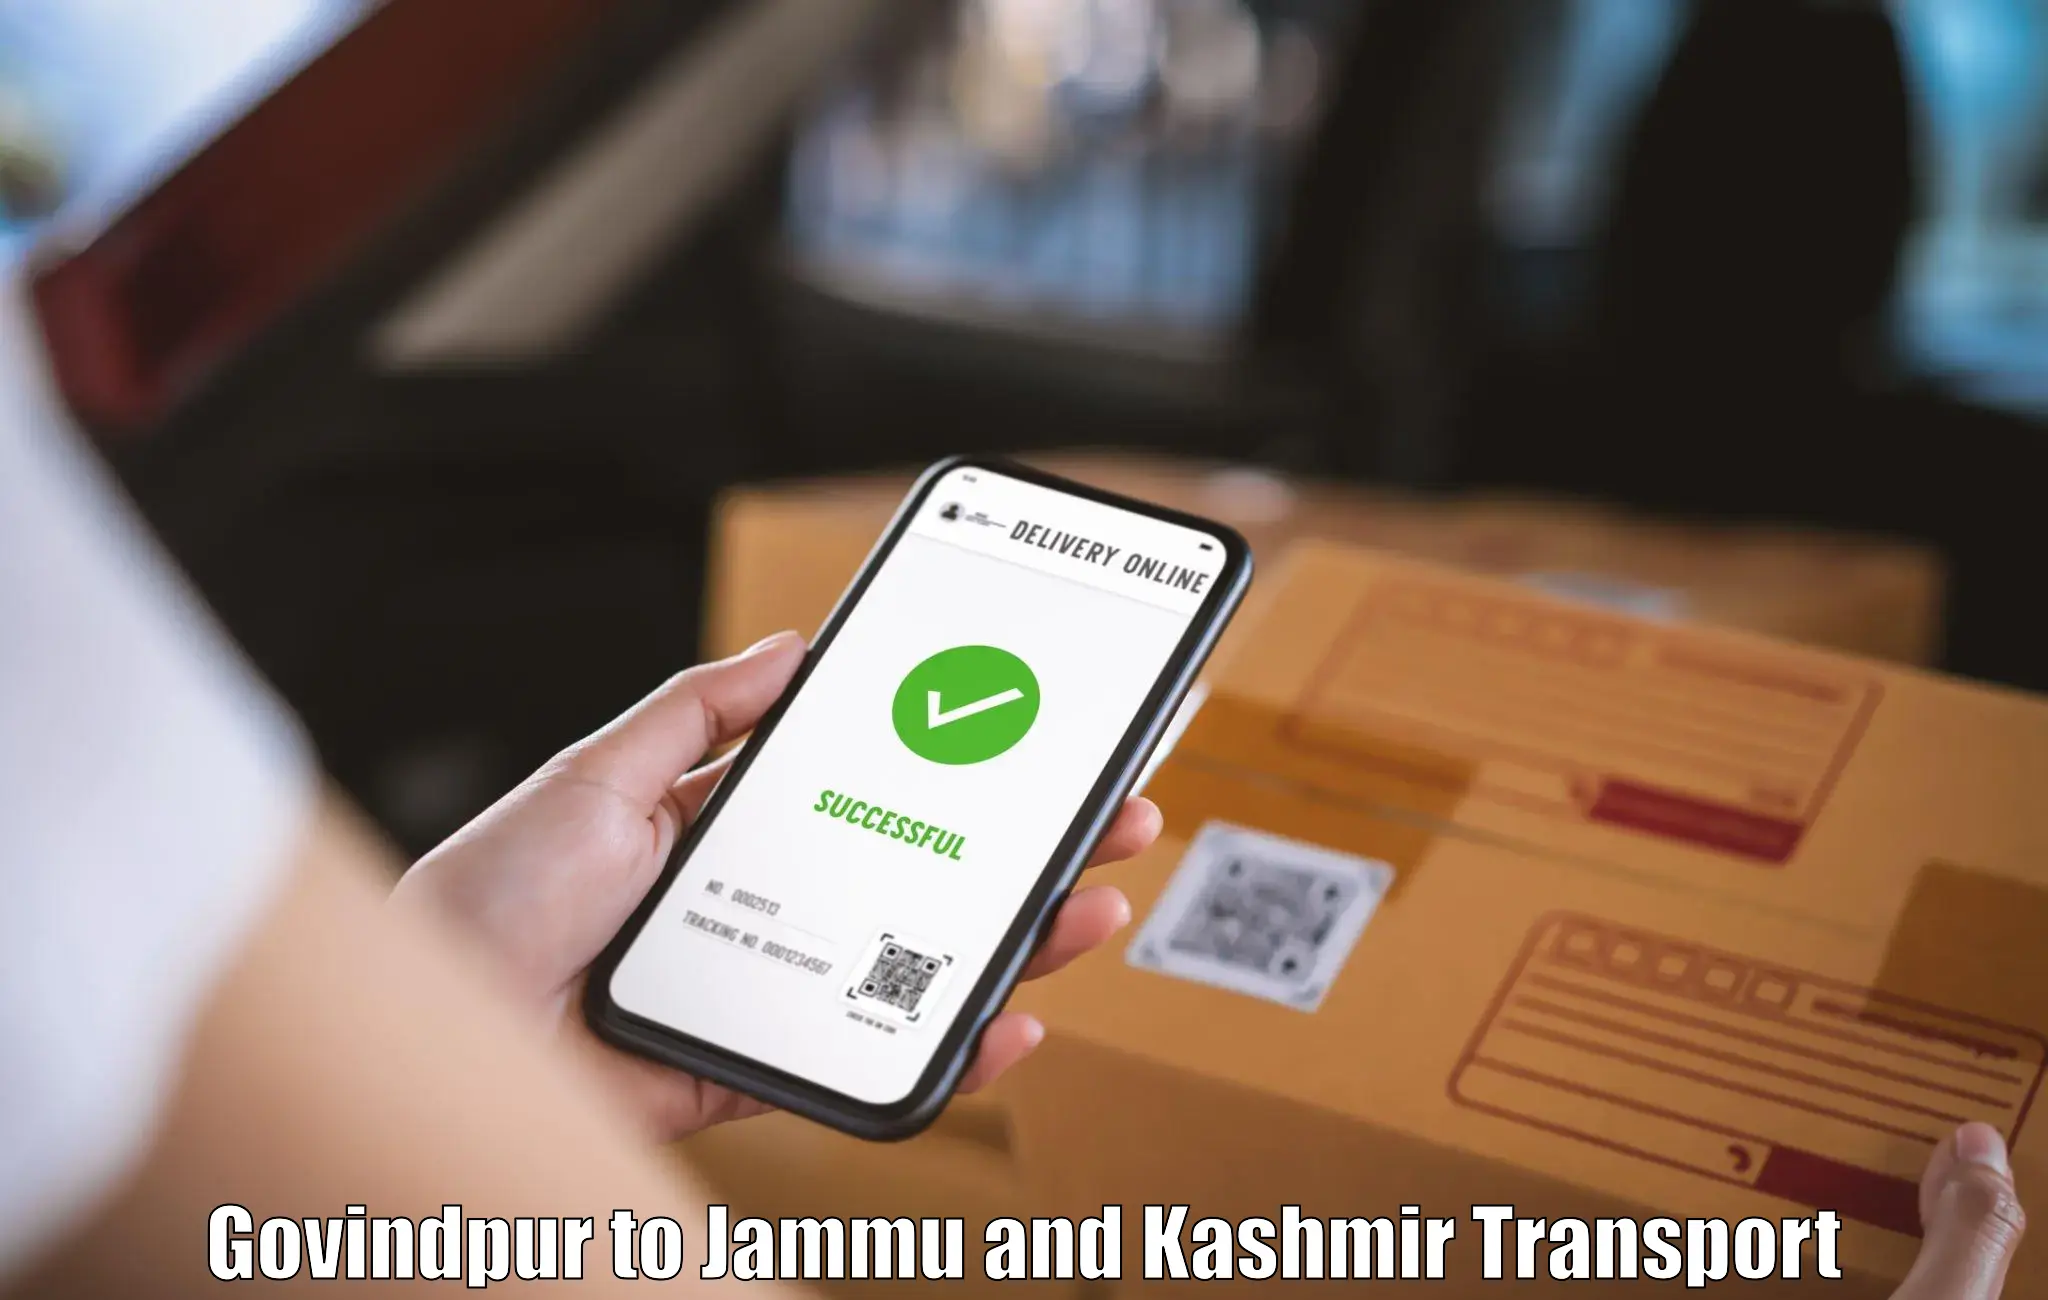 Part load transport service in India Govindpur to Srinagar Kashmir